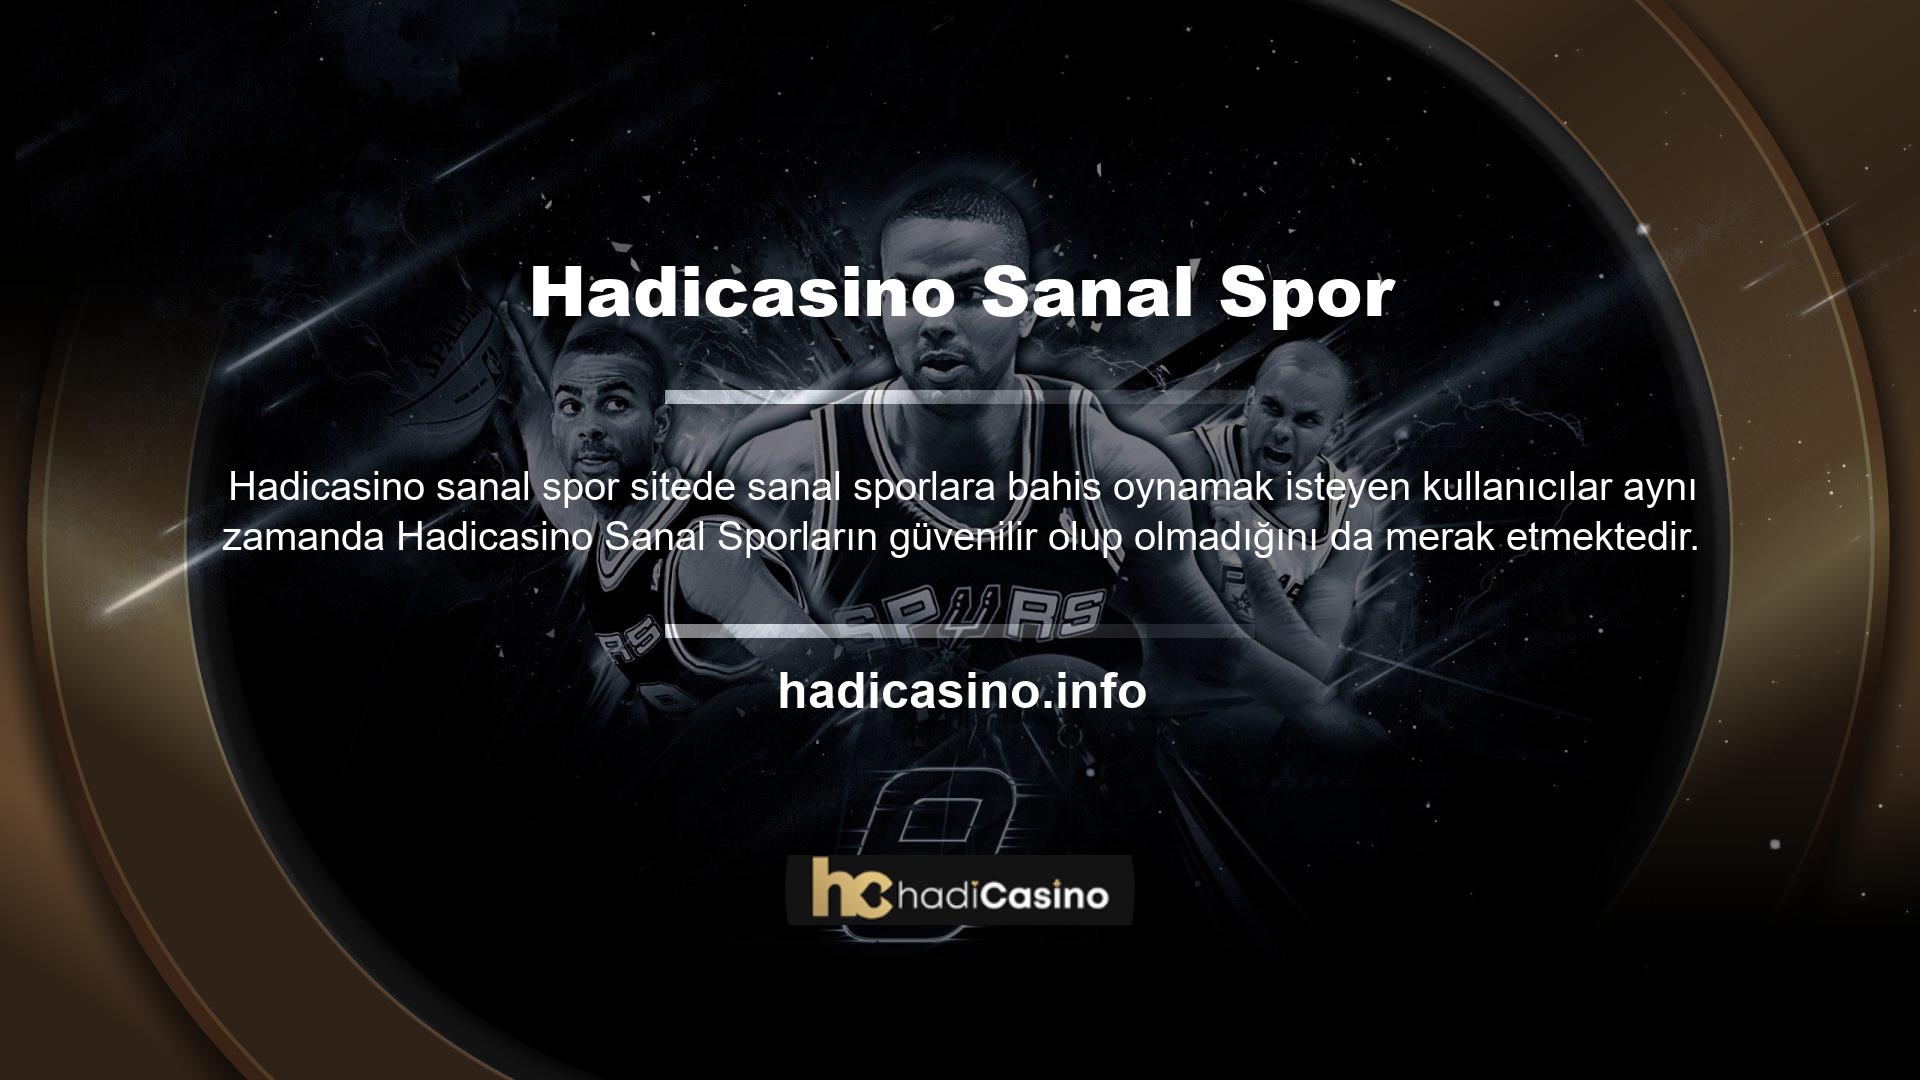 Bu site casino lisansı altındadır ve site yöneticileri sektörde uzun yıllardır çalışan bir ekiptir